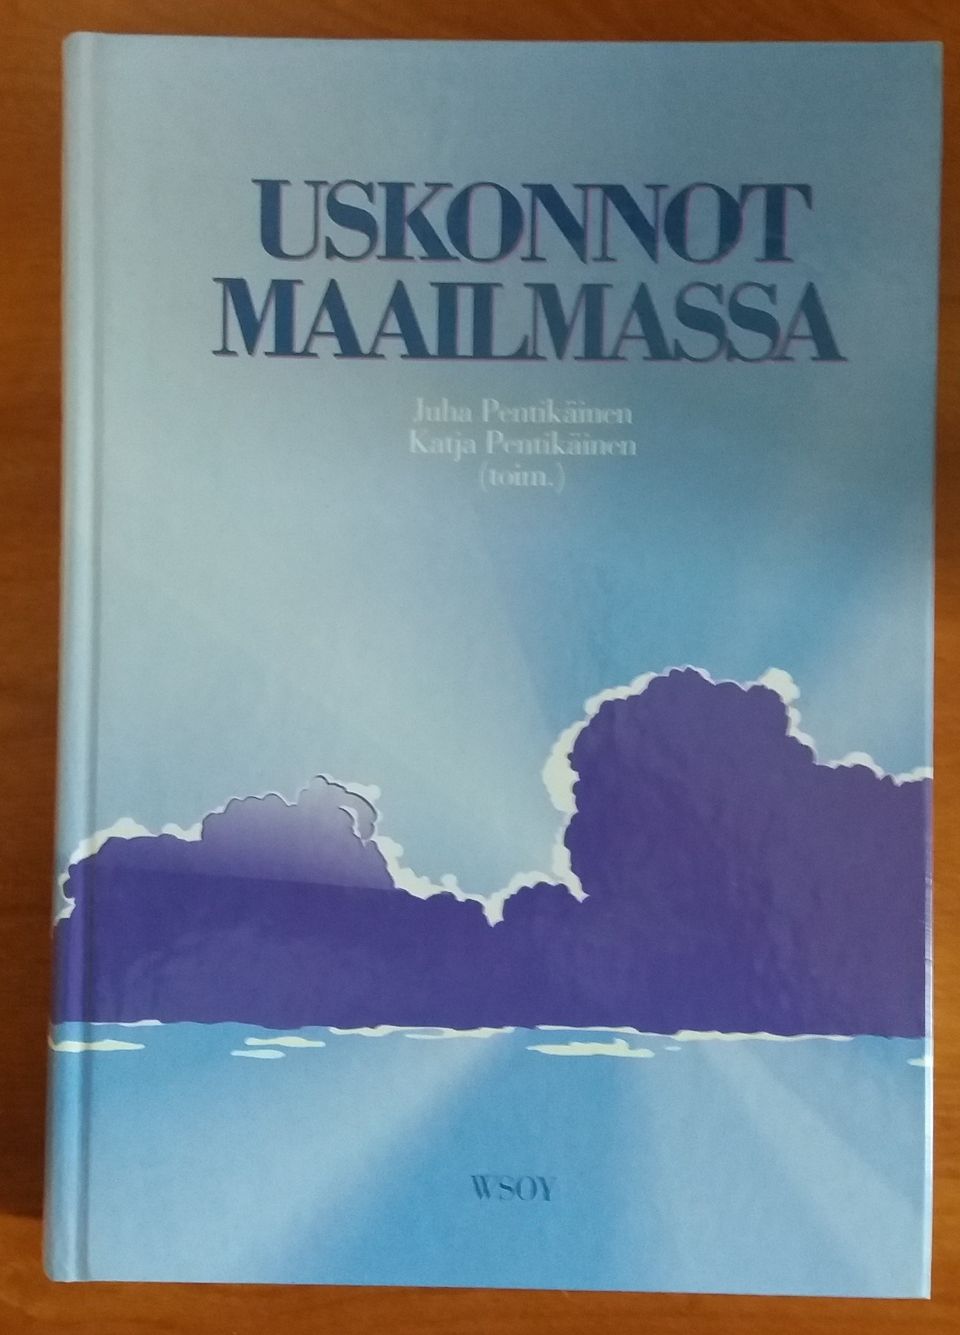 Juha ja Katja Pentikäinen USKONNOT MAAILMASSA Wsoy 1992